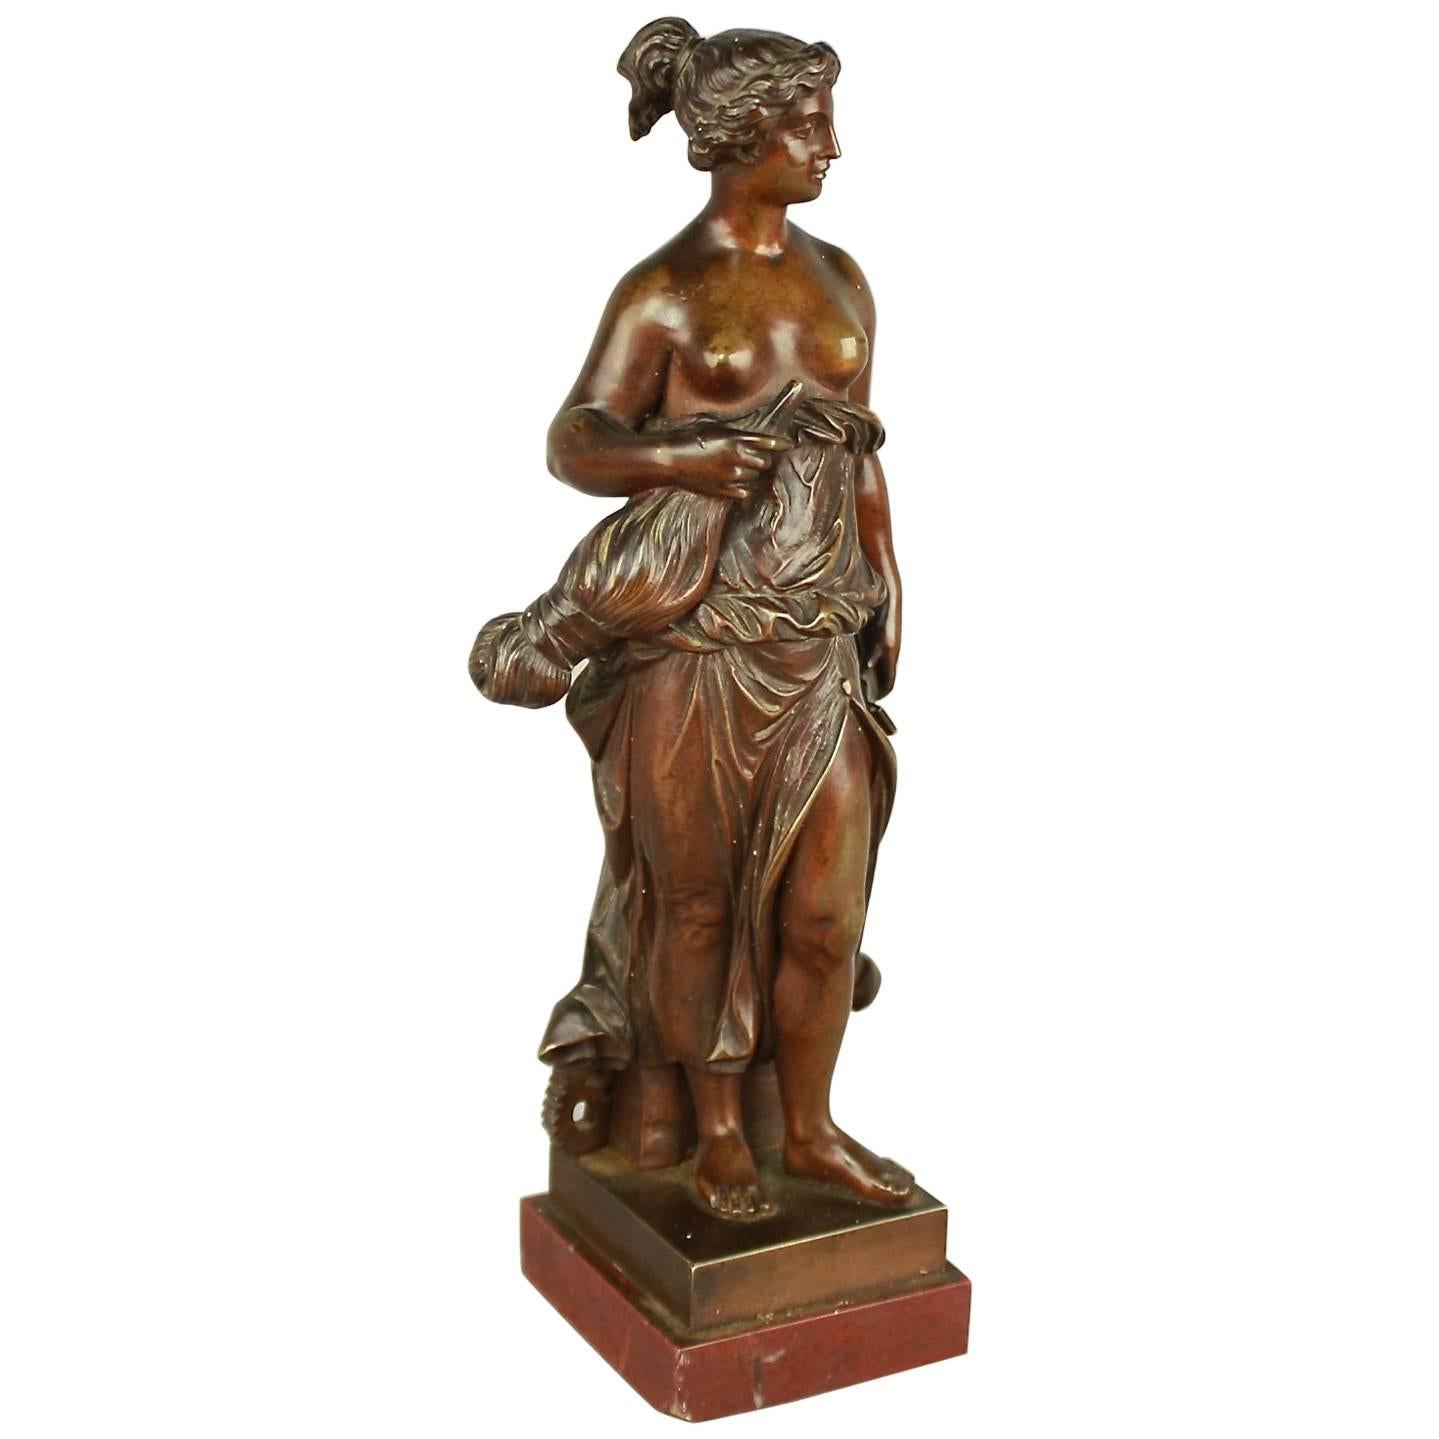 Bronzefigur der Manufacture-Allegorie aus dem 19. Jahrhundert